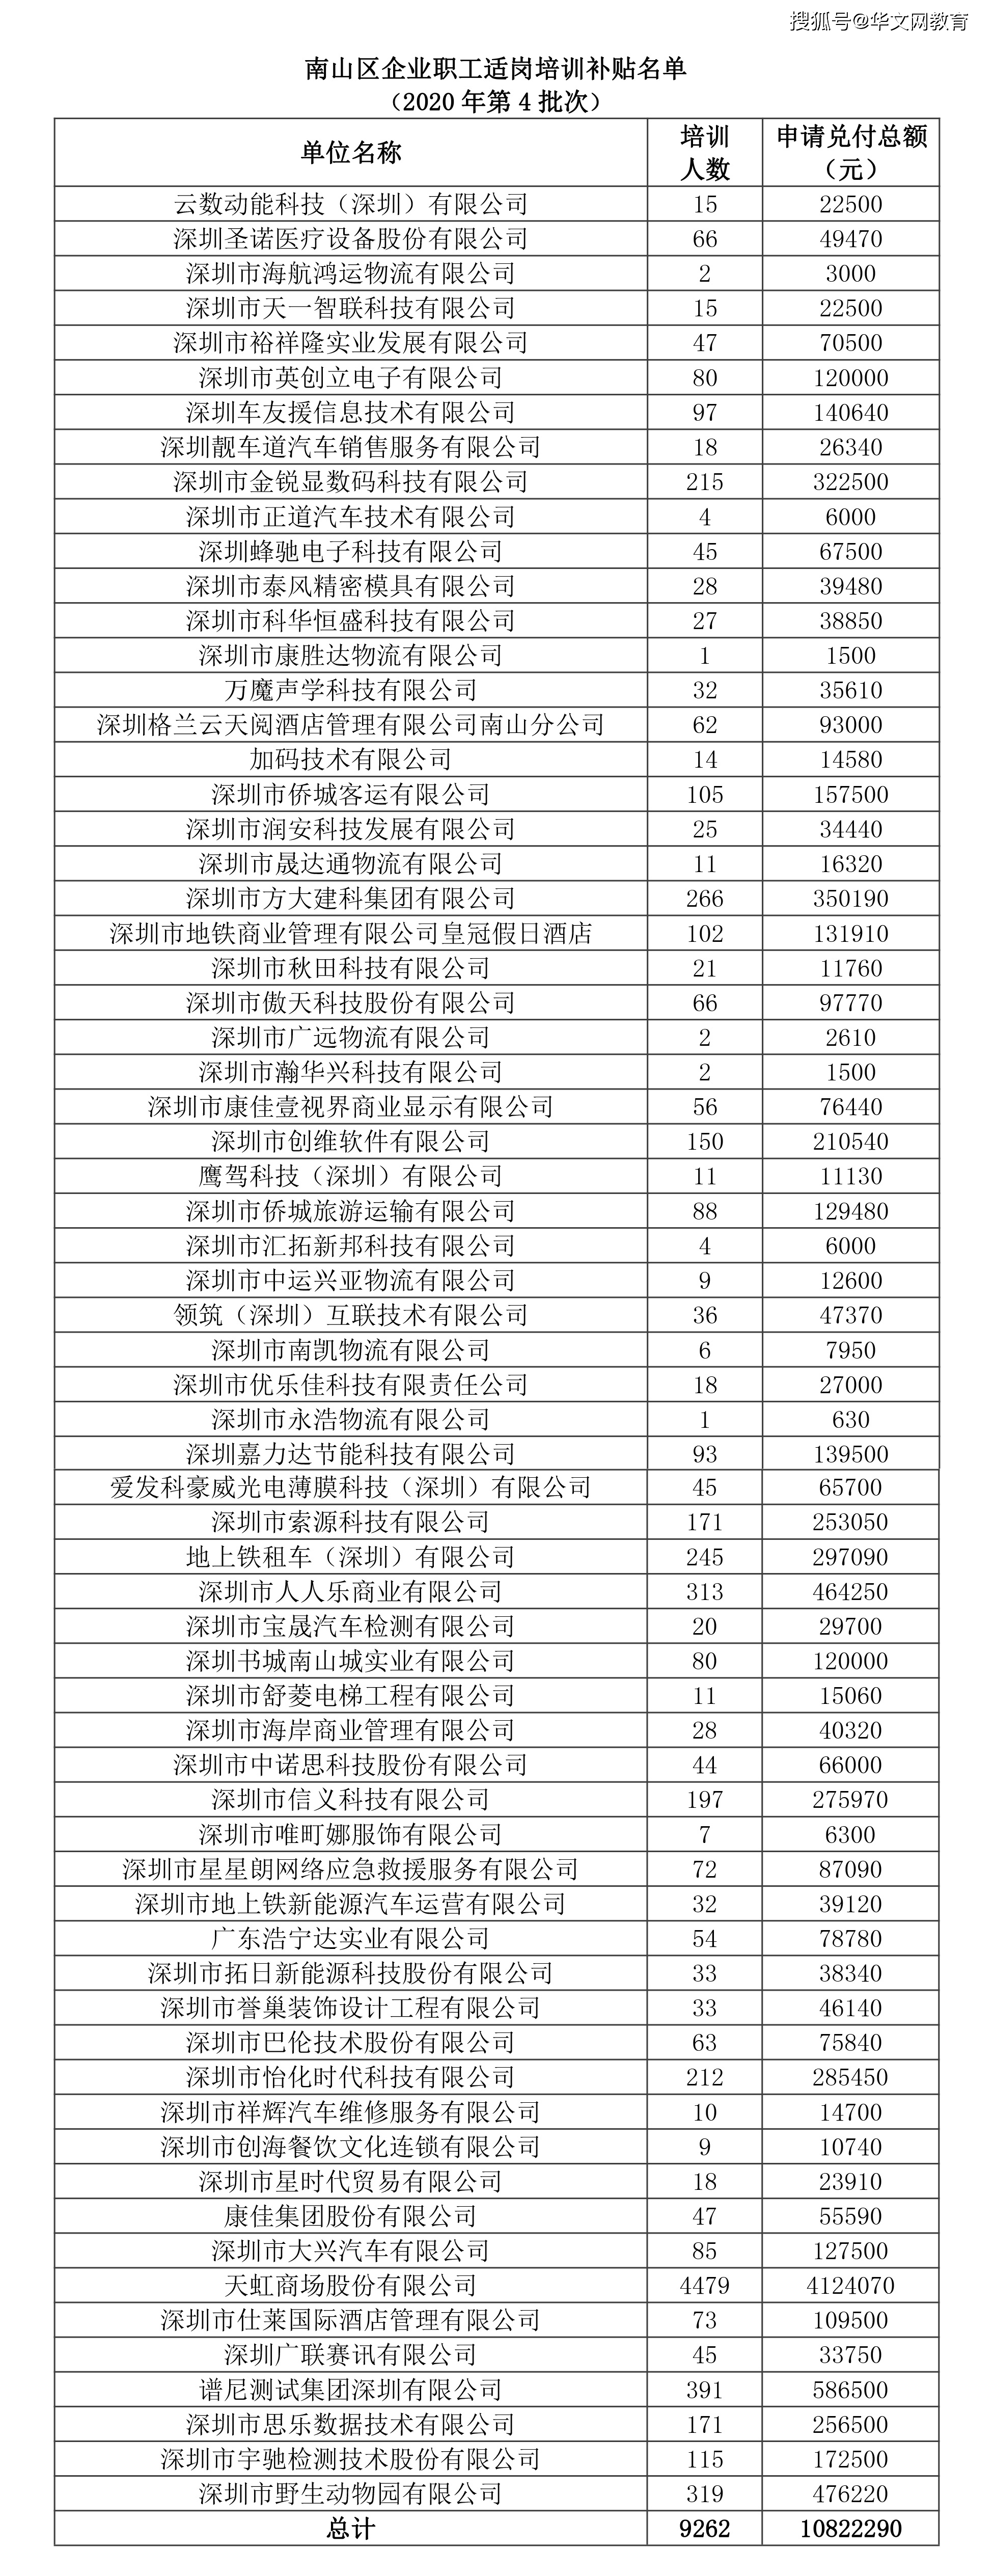 火狐娱乐线上平台-
深圳南山、罗湖、福田、龙华、灼烁适岗培训补助申请发放企业公示名单(图1)